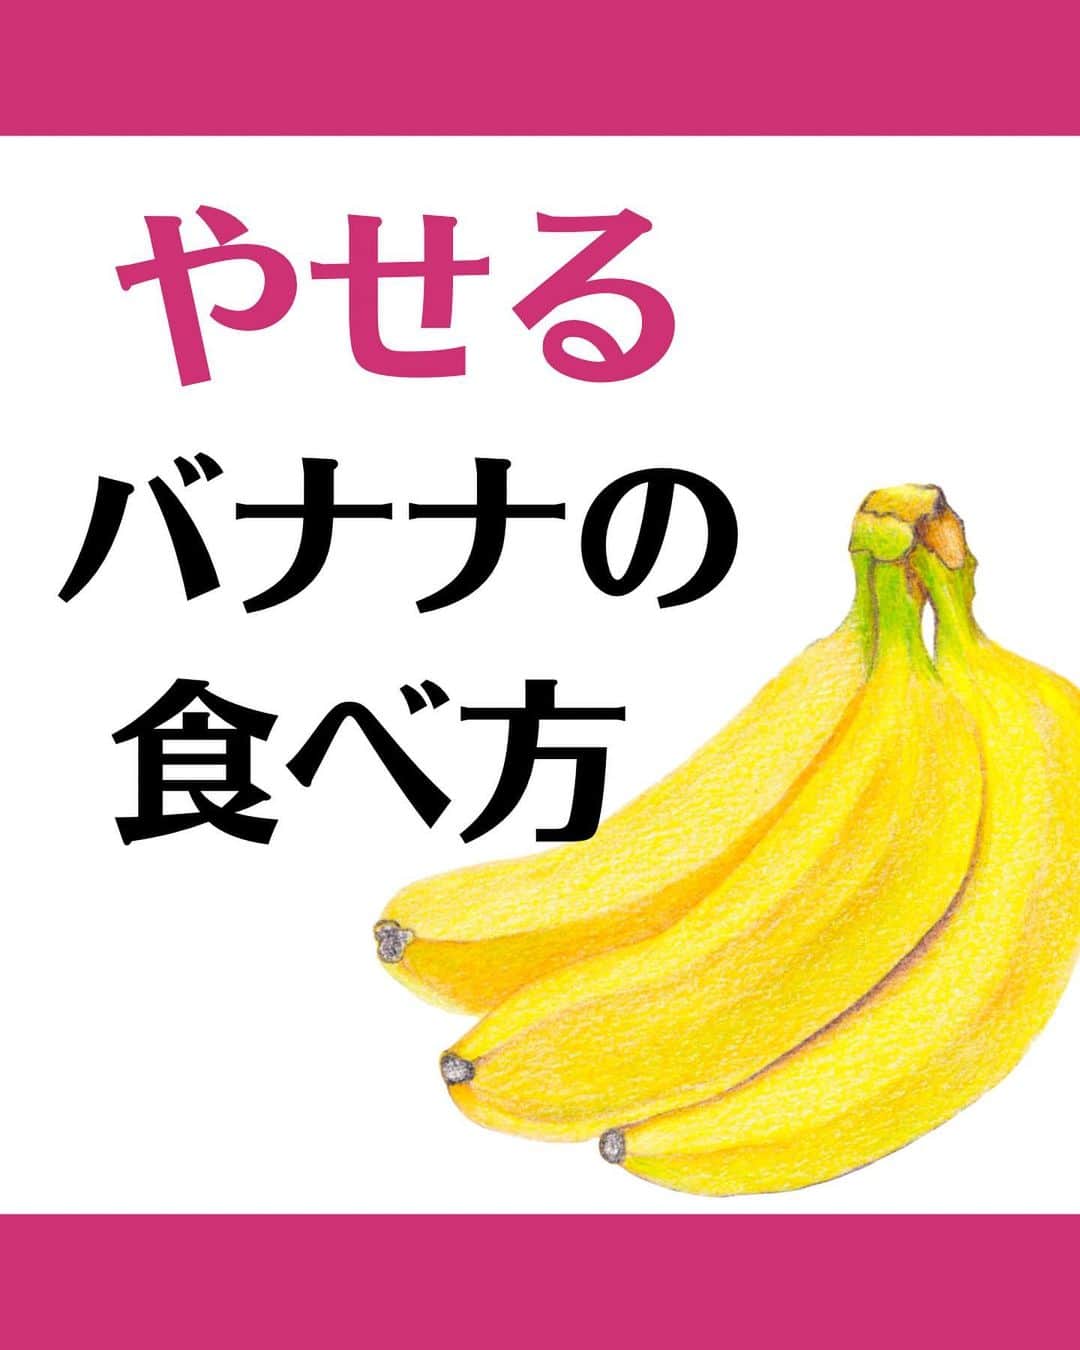 松田リエのインスタグラム：「@matsuda_rie8 ◀︎他の投稿  【やせるバナナの食べ方】 1.シナモンと一緒に 2.コーヒーと一緒に 3.ヨーグルトと一緒に  バナナはそれだけで食べても ダイエット効果抜群ですが 紹介した食べ合わせだと よりその効果が発揮されます🔥  ぜひあなたも 真似してみてくださいね！  __________  このアカウントは 趣味ダイエット 特技リバウンドだった私が  『3食しっかり食べて-12㎏痩せた方法』 を発信しています。  1人でも多くの人が 辛いダイエットから解放され 明るい未来を手に入れられるように 正しいダイエットの方法をお伝えしていきます。  @matsuda_rie8 ◀︎-12㎏の食べて痩せるダイエット法  __________  2500人が成功した 【ベルラスダイエット3ヶ月講座】の 公式アカウントはこちら↓ @bls.academy   #ダイエット  #ダイエットメニュー  #食べ痩せダイエット  #食べて痩せるダイエット  #ダイエットレシピ」